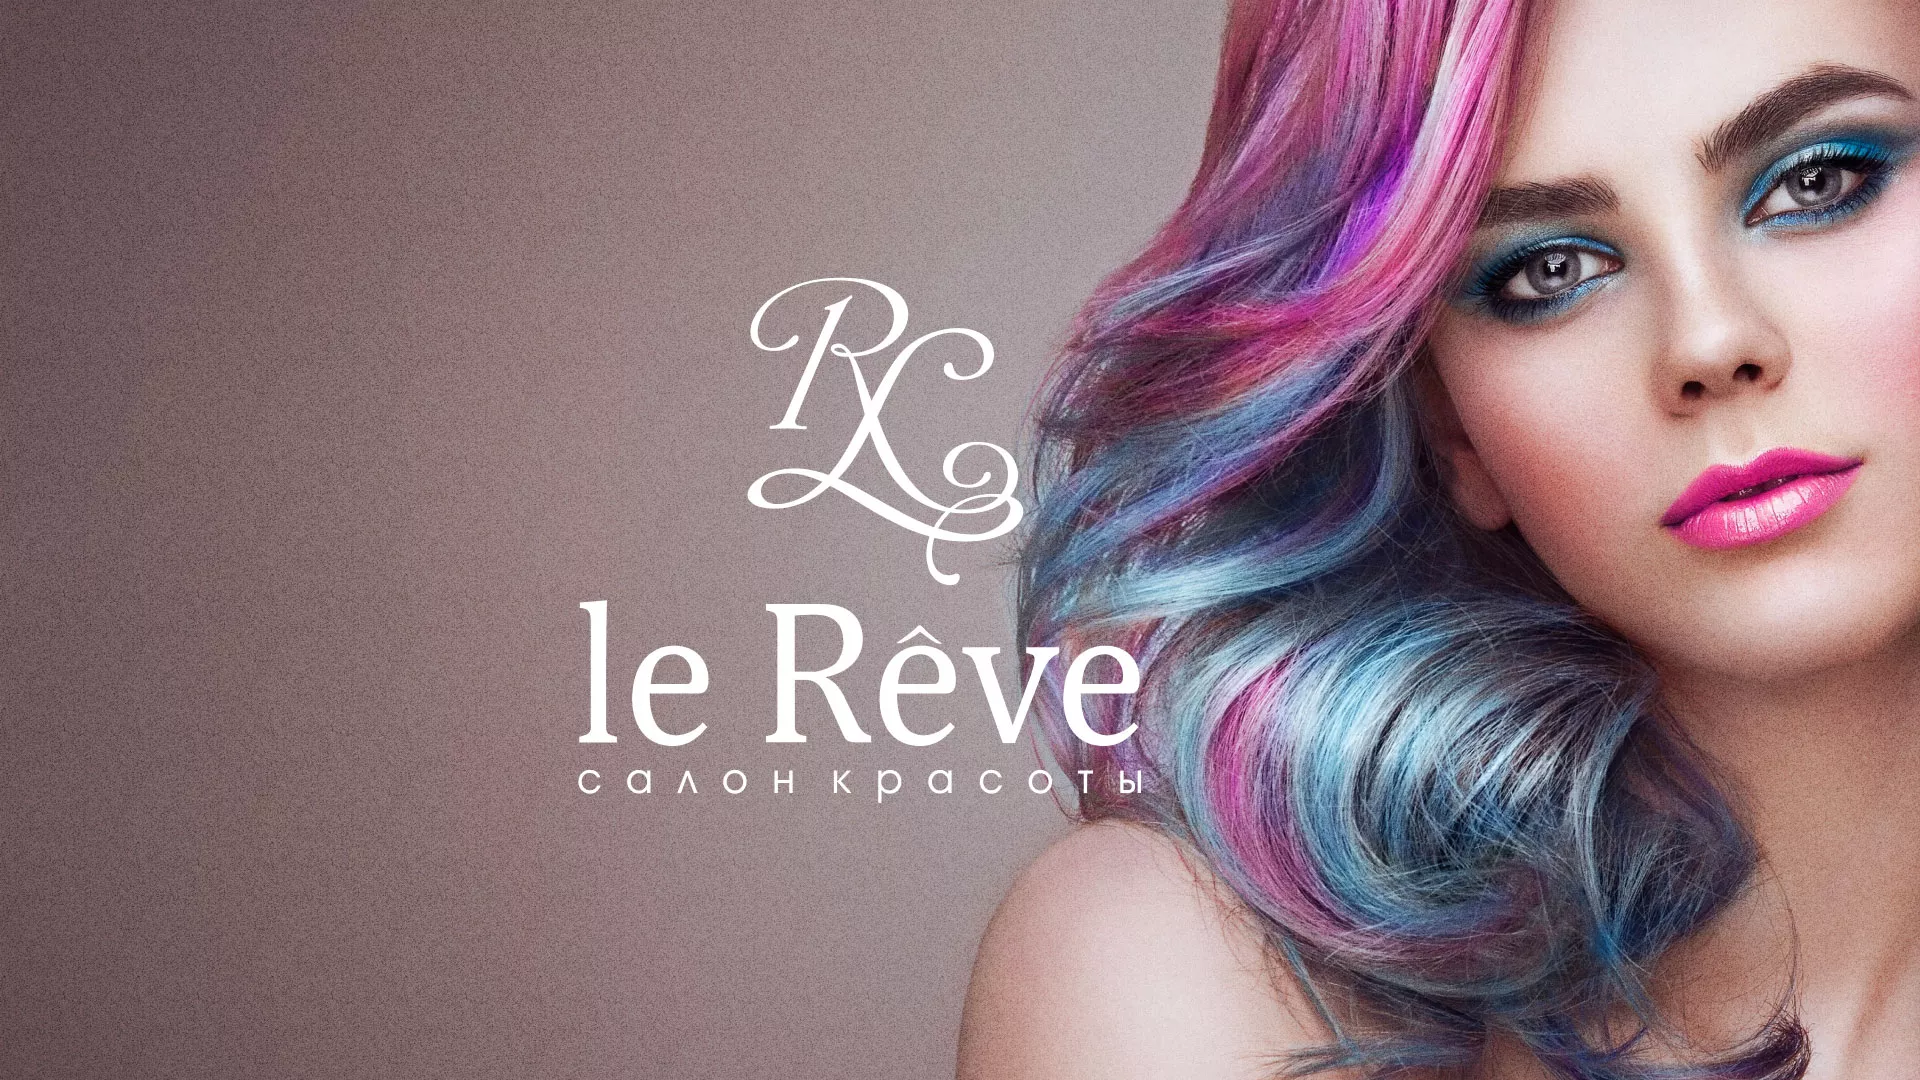 Создание сайта для салона красоты «Le Reve» в Ворсме